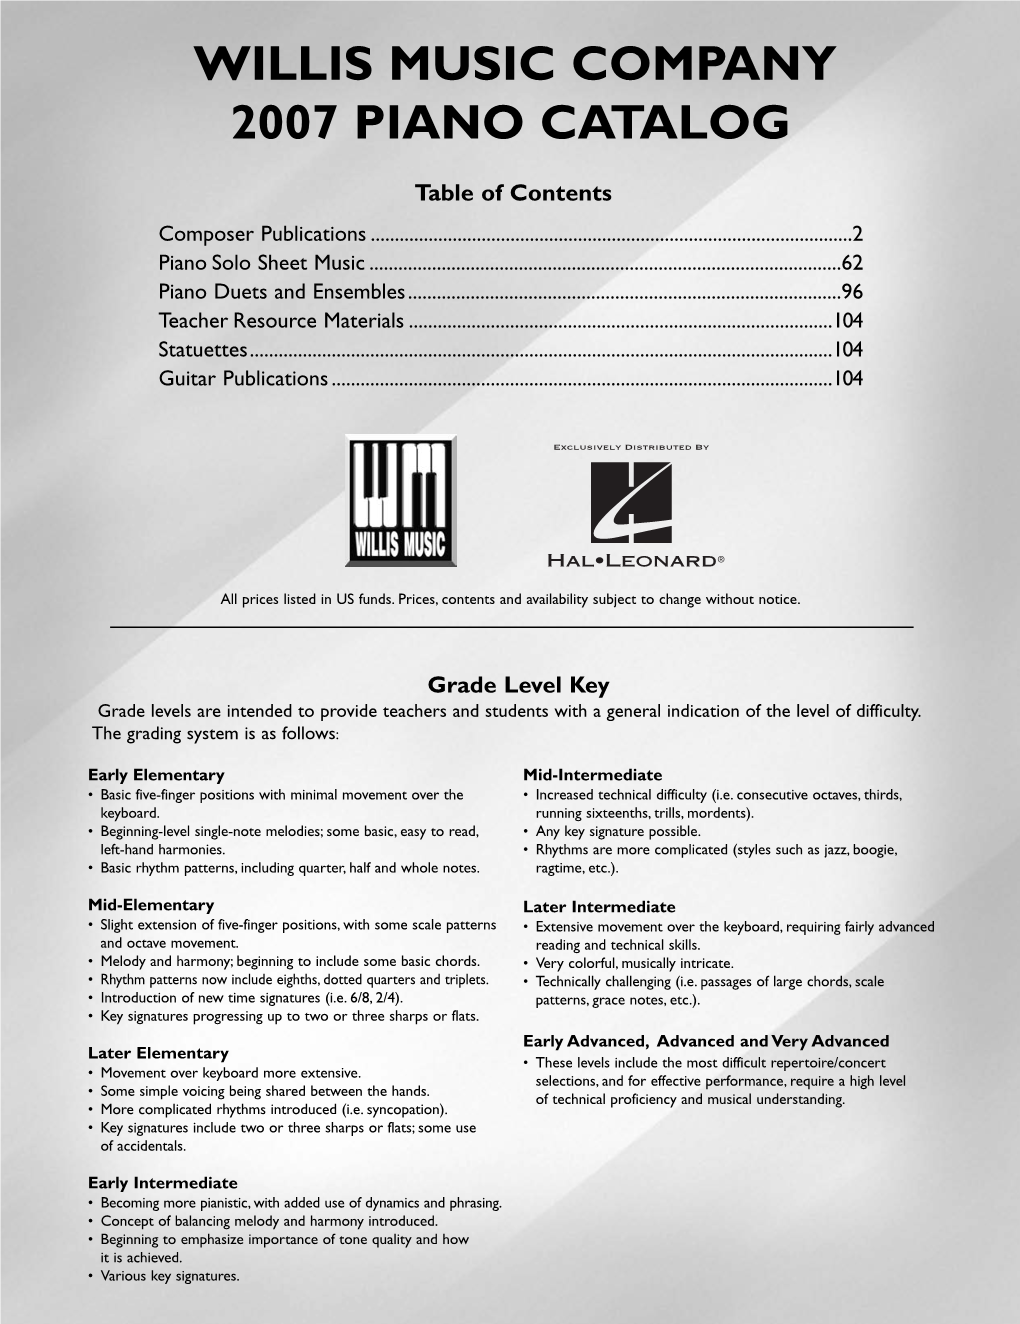 Willis Music Company 2007 Piano Catalog